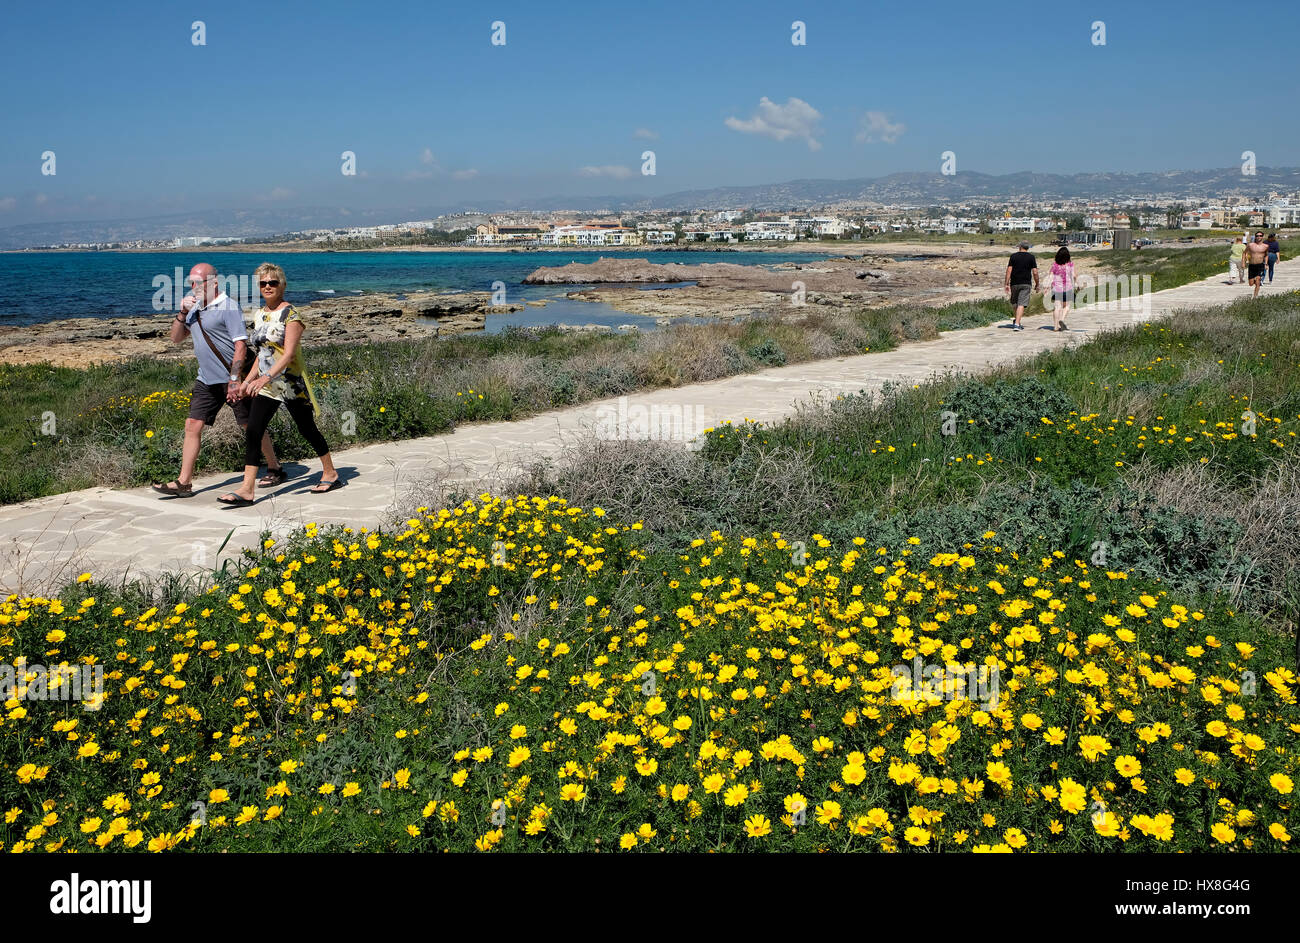 Les marcheurs de la Couronne passe en pleine floraison de marguerites sur le chemin côtier, Kato Paphos Paphos, Chypre. Banque D'Images